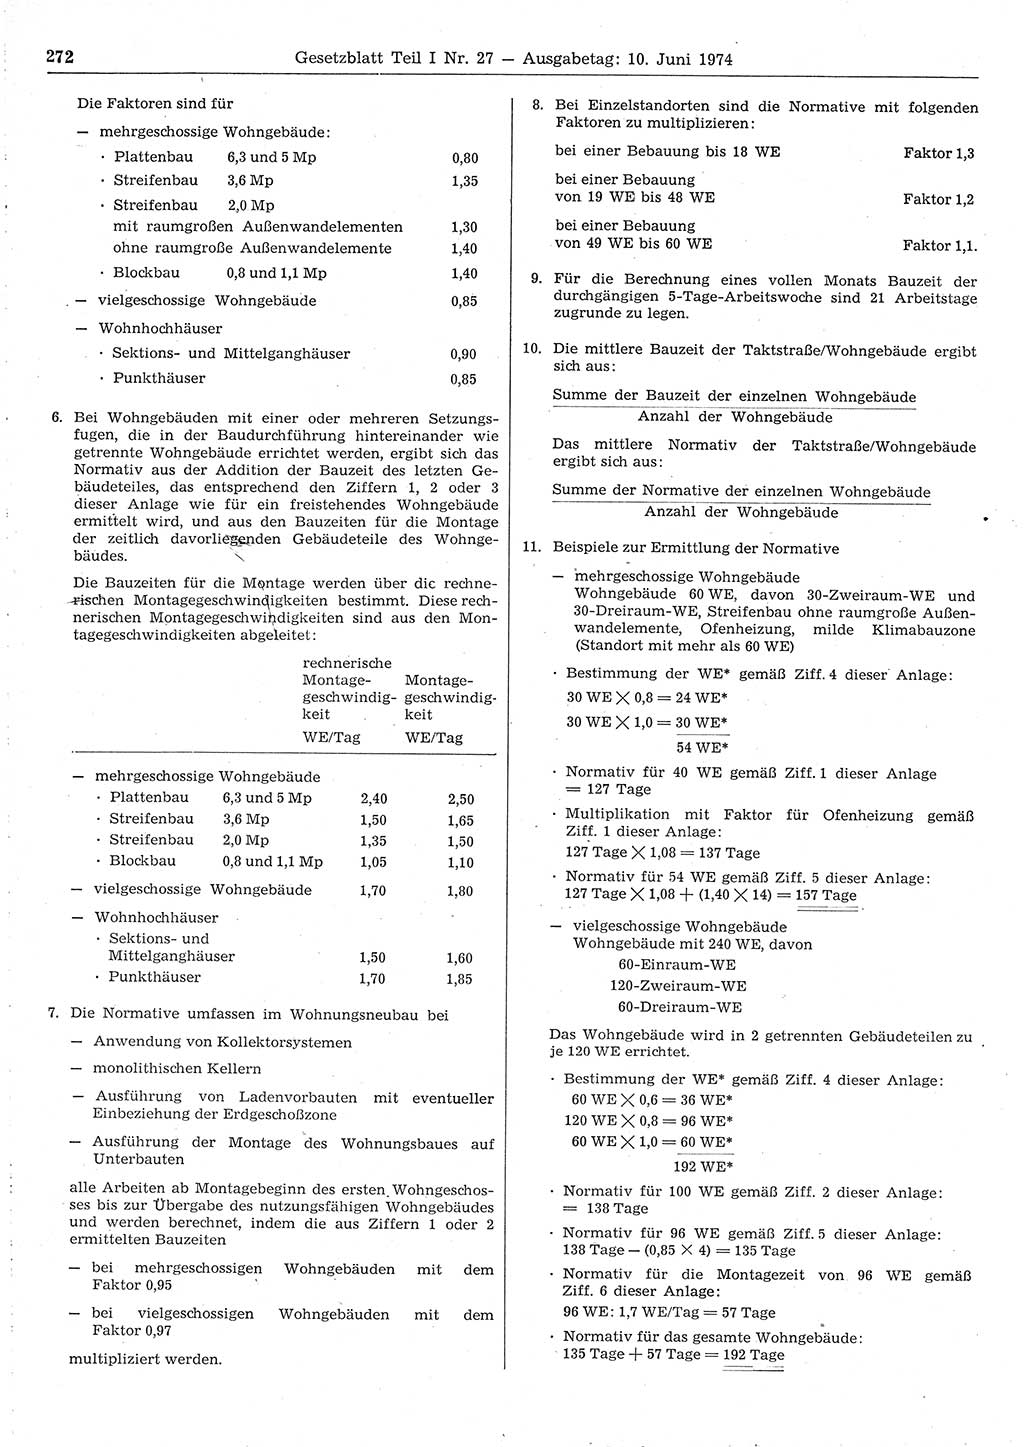 Gesetzblatt (GBl.) der Deutschen Demokratischen Republik (DDR) Teil Ⅰ 1974, Seite 272 (GBl. DDR Ⅰ 1974, S. 272)